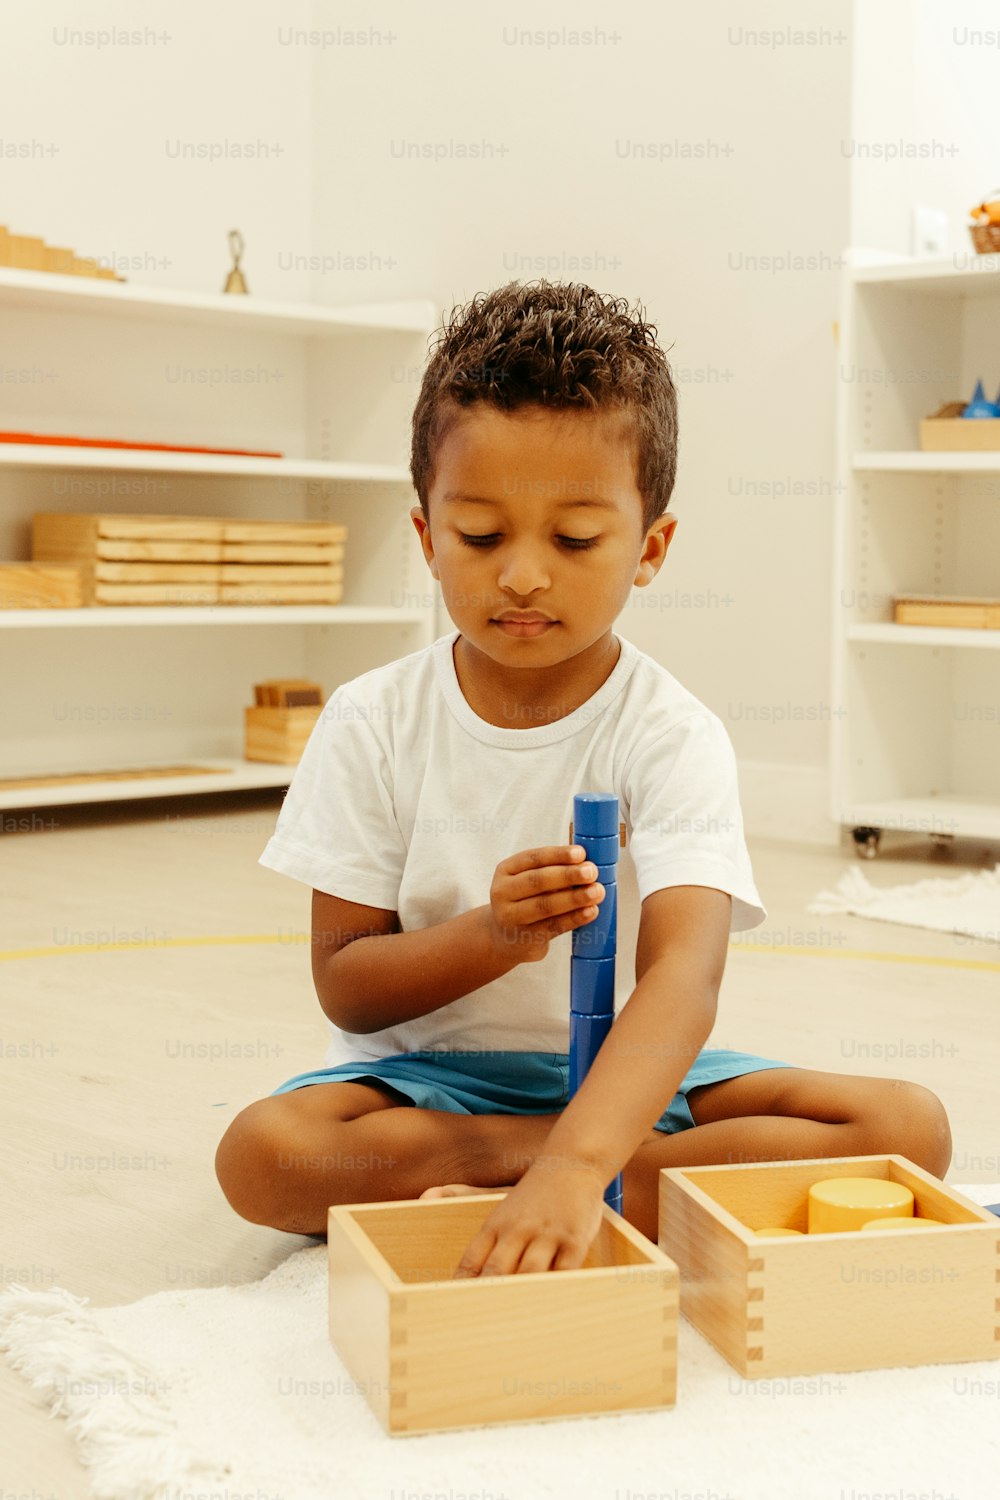 un ragazzino seduto sul pavimento che gioca con uno spazzolino da denti blu